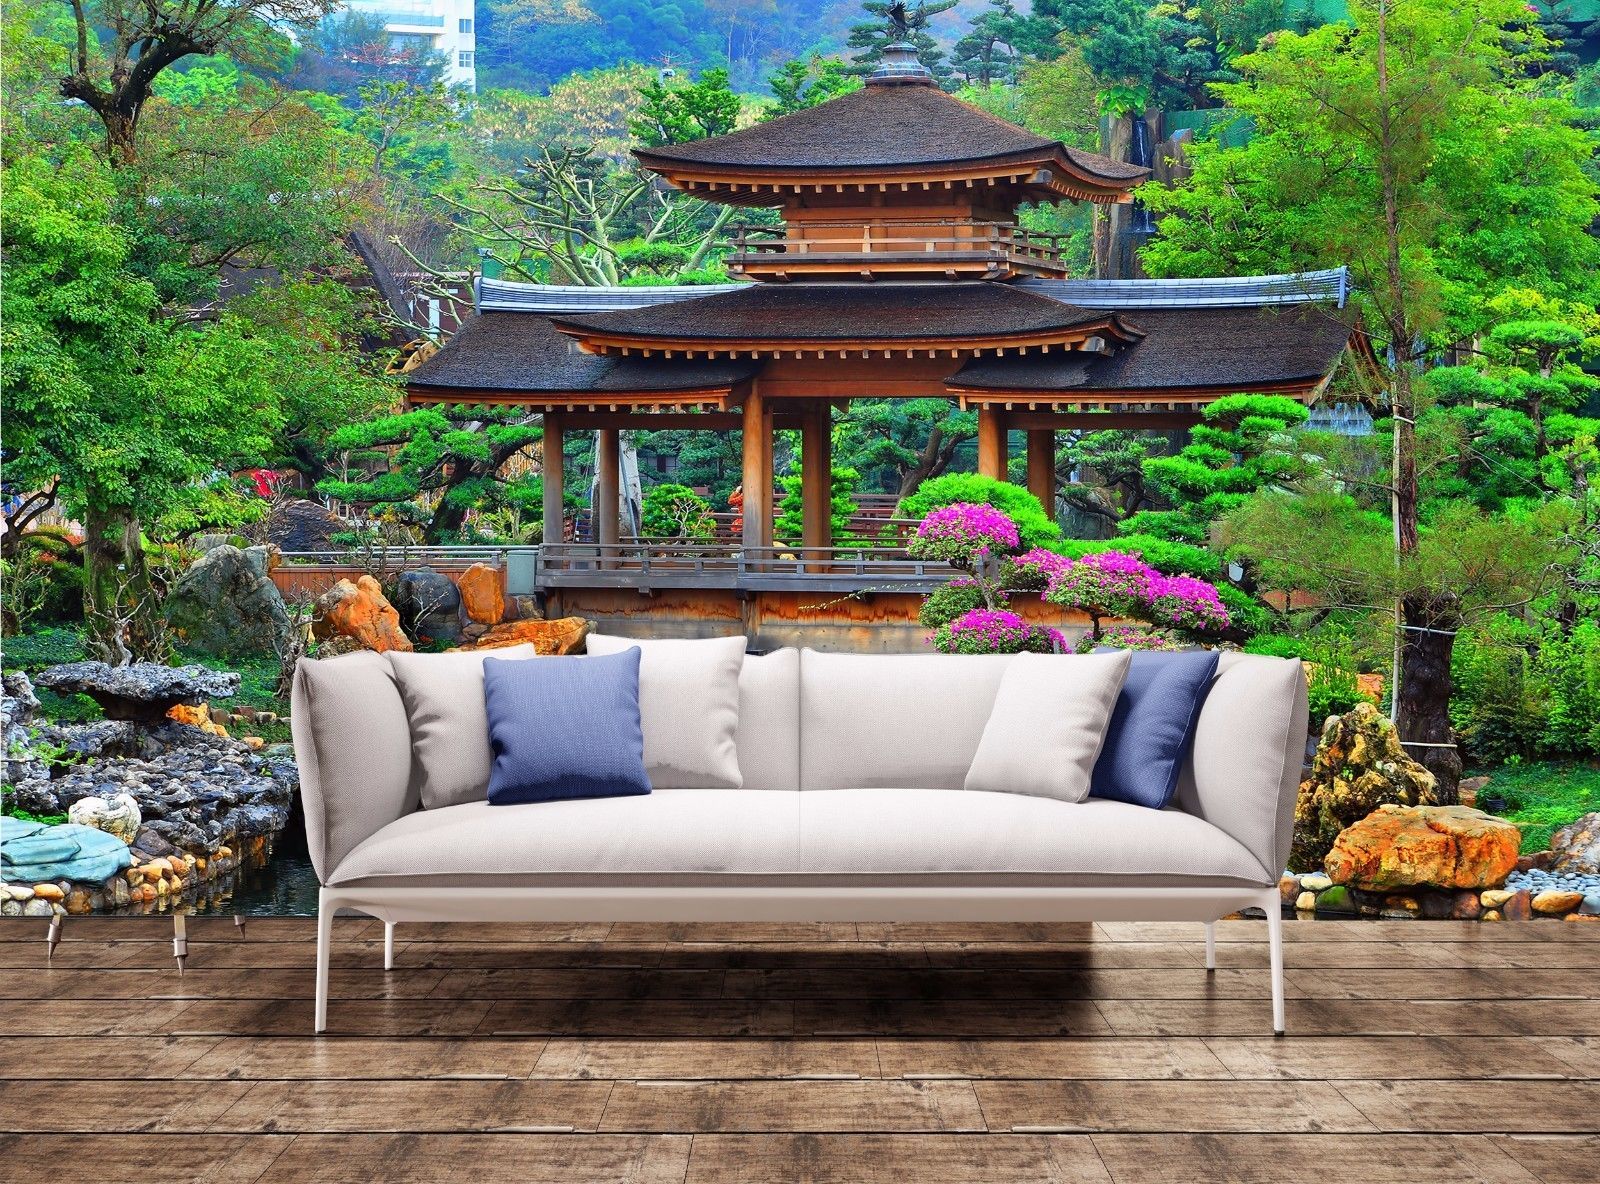 Wall Mural Pagoda Chinese Zen Garden Wall Art Home Room Decor Print